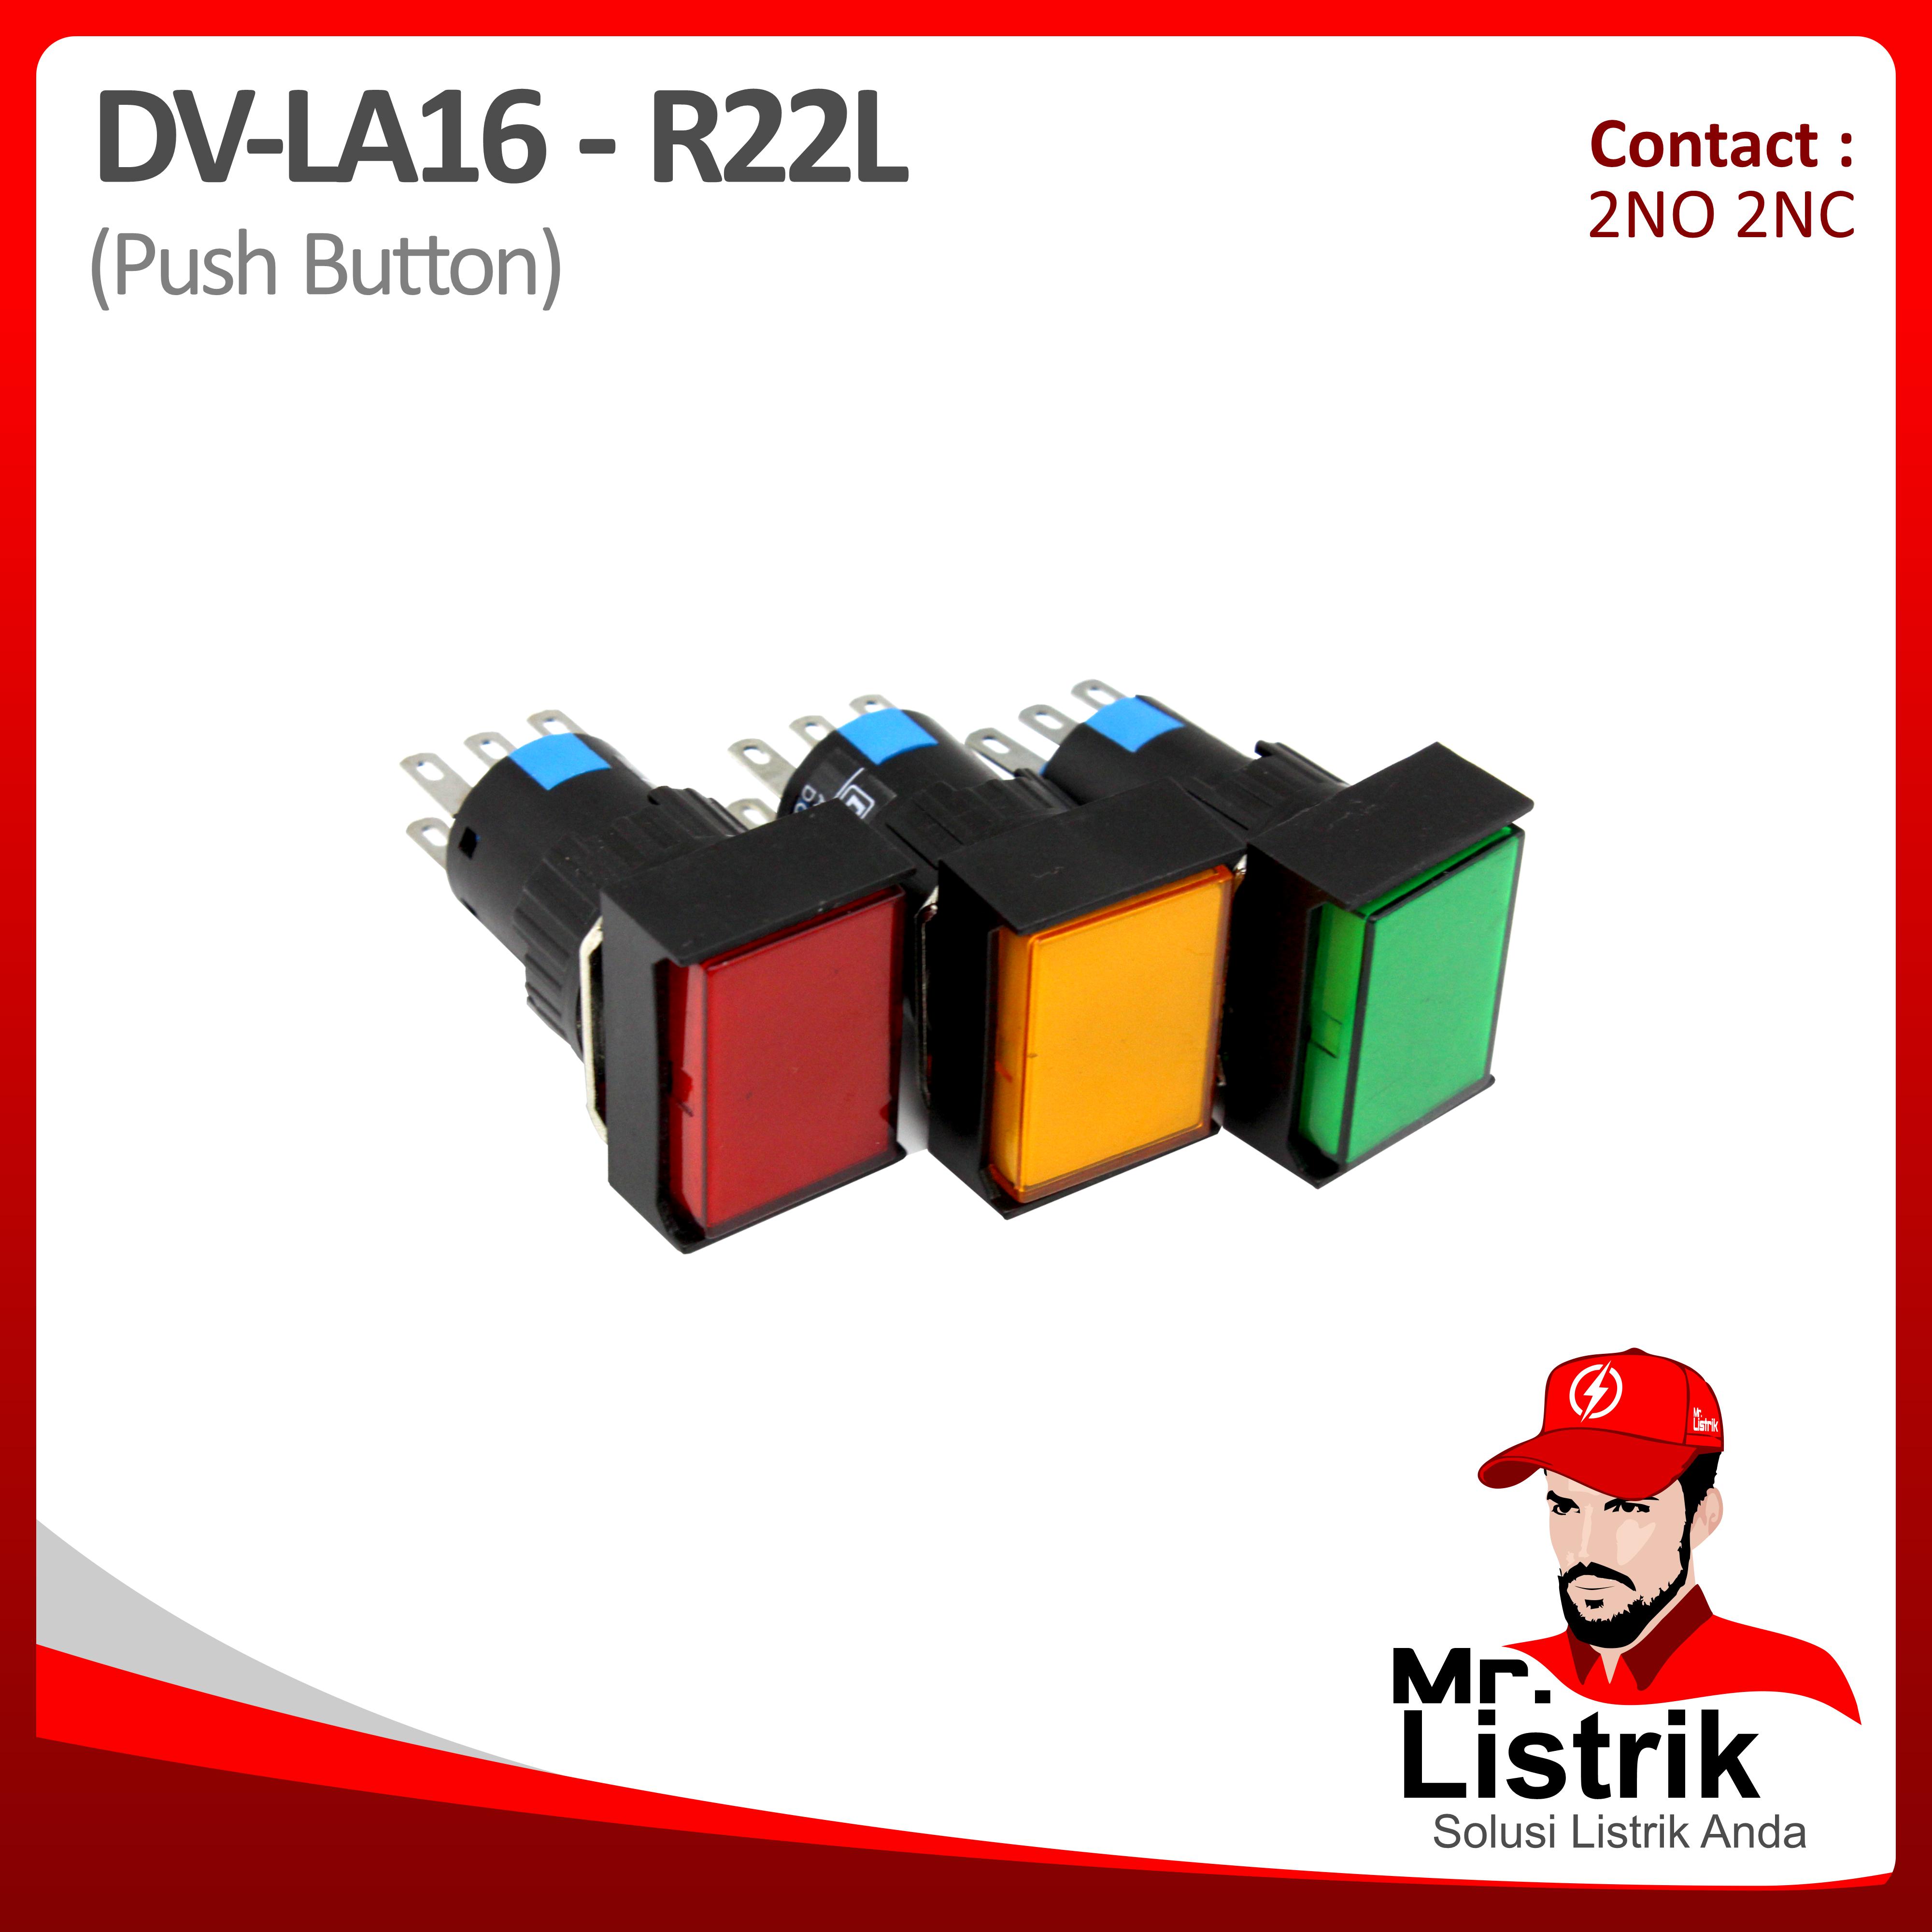 Push Button 16mm DV Pin Contact Persegi Panjang Lock 2NO 2NC LA16-R22L - Red / Green / Yellow